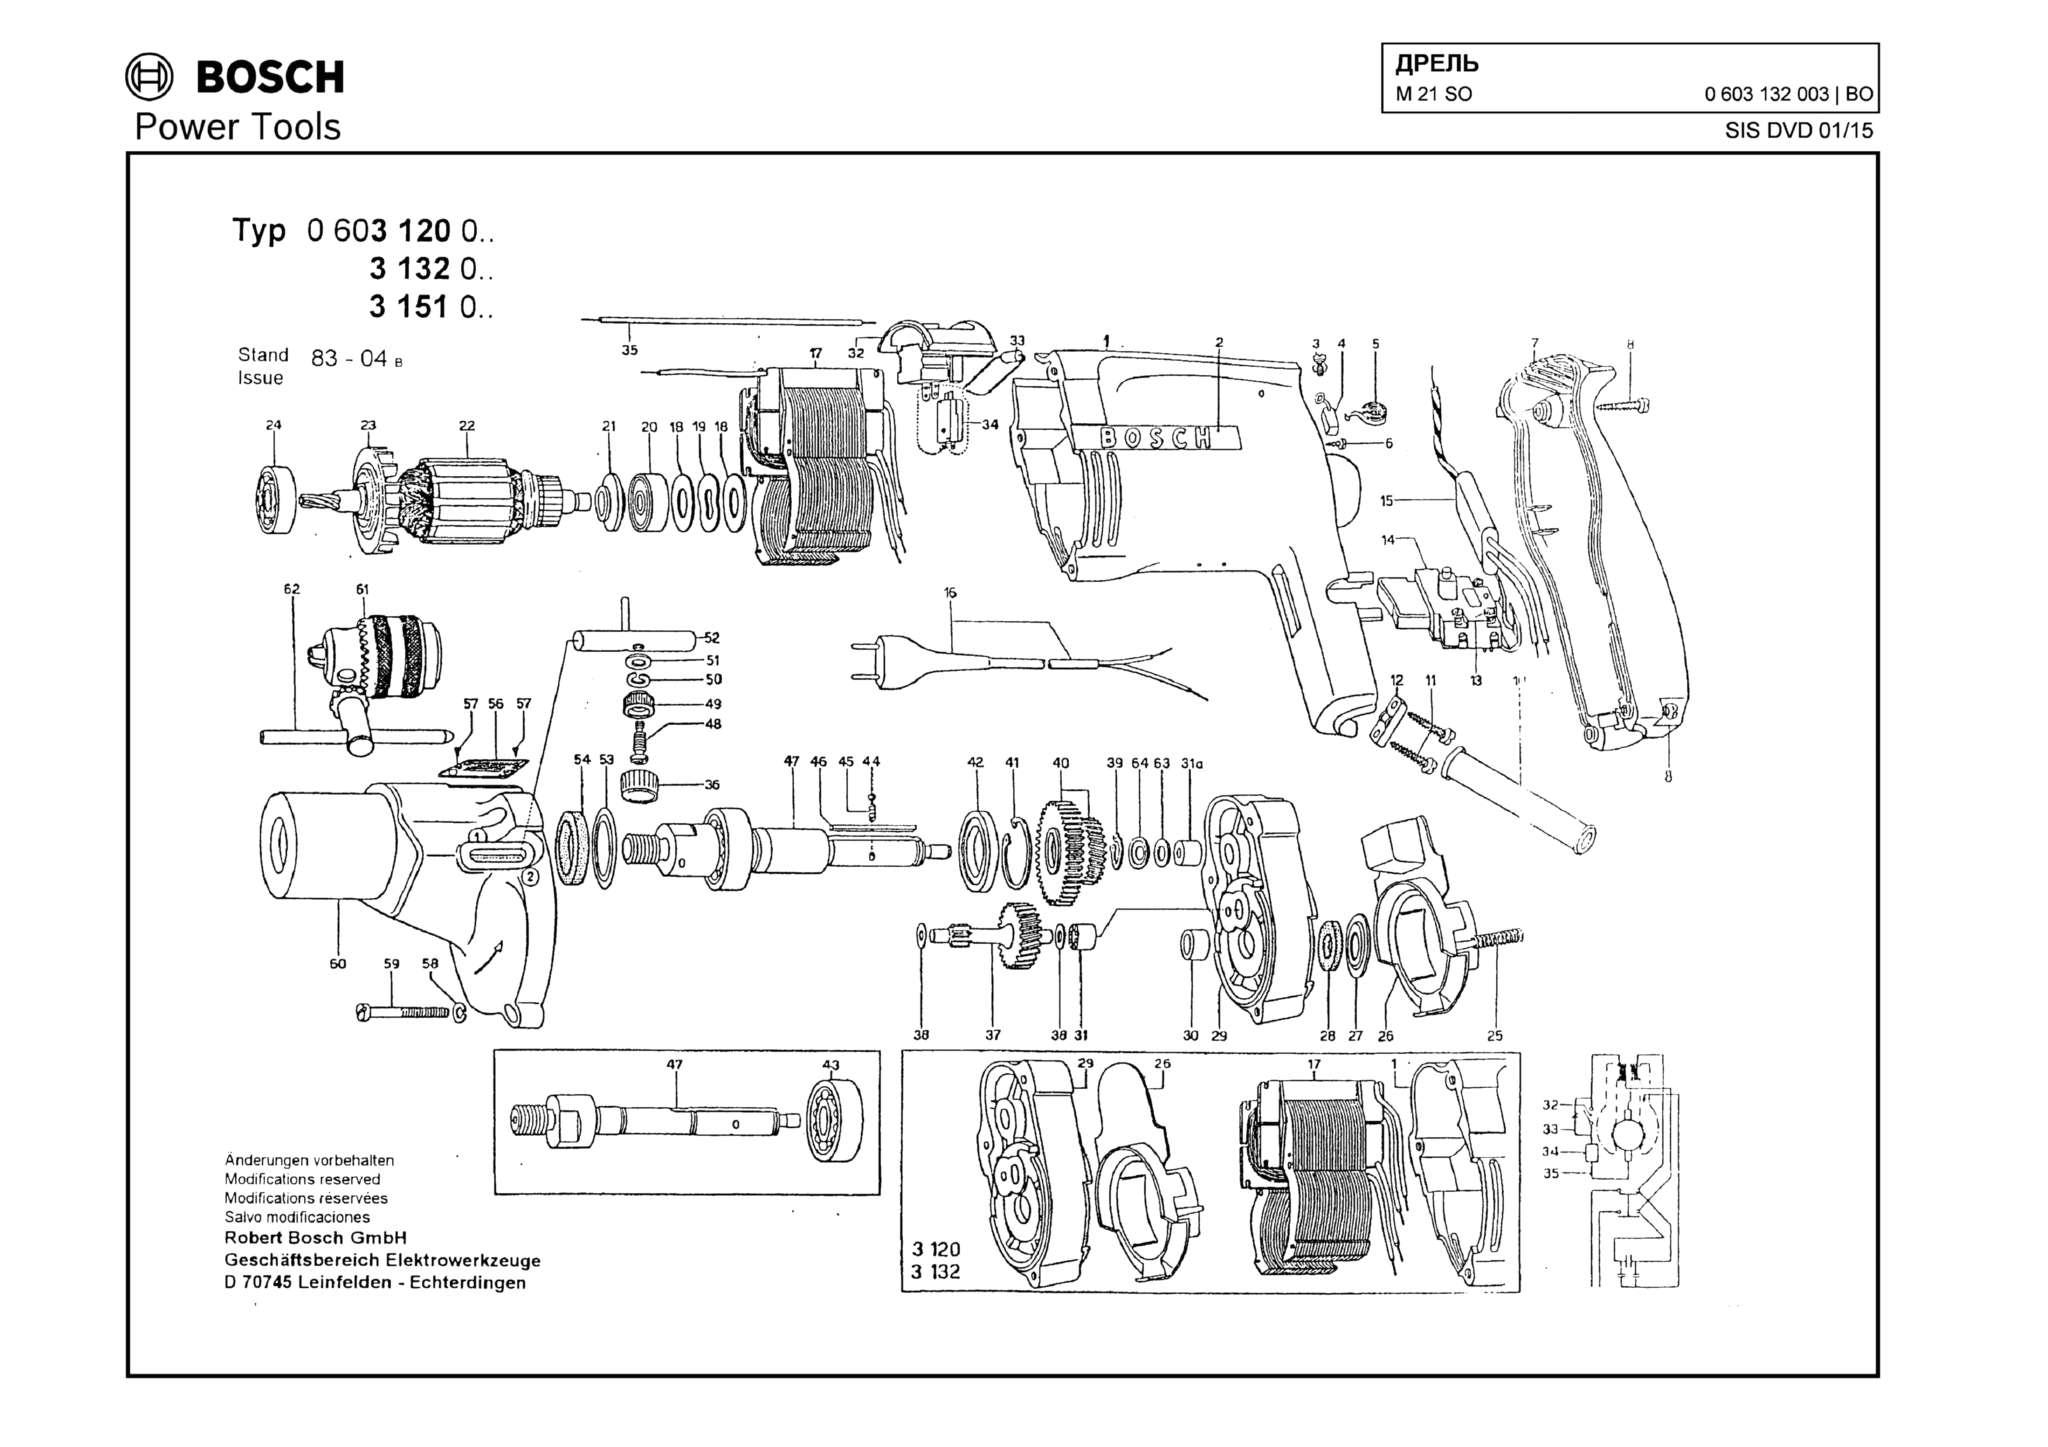 Запчасти, схема и деталировка Bosch M 21 SO (ТИП 0603132003)